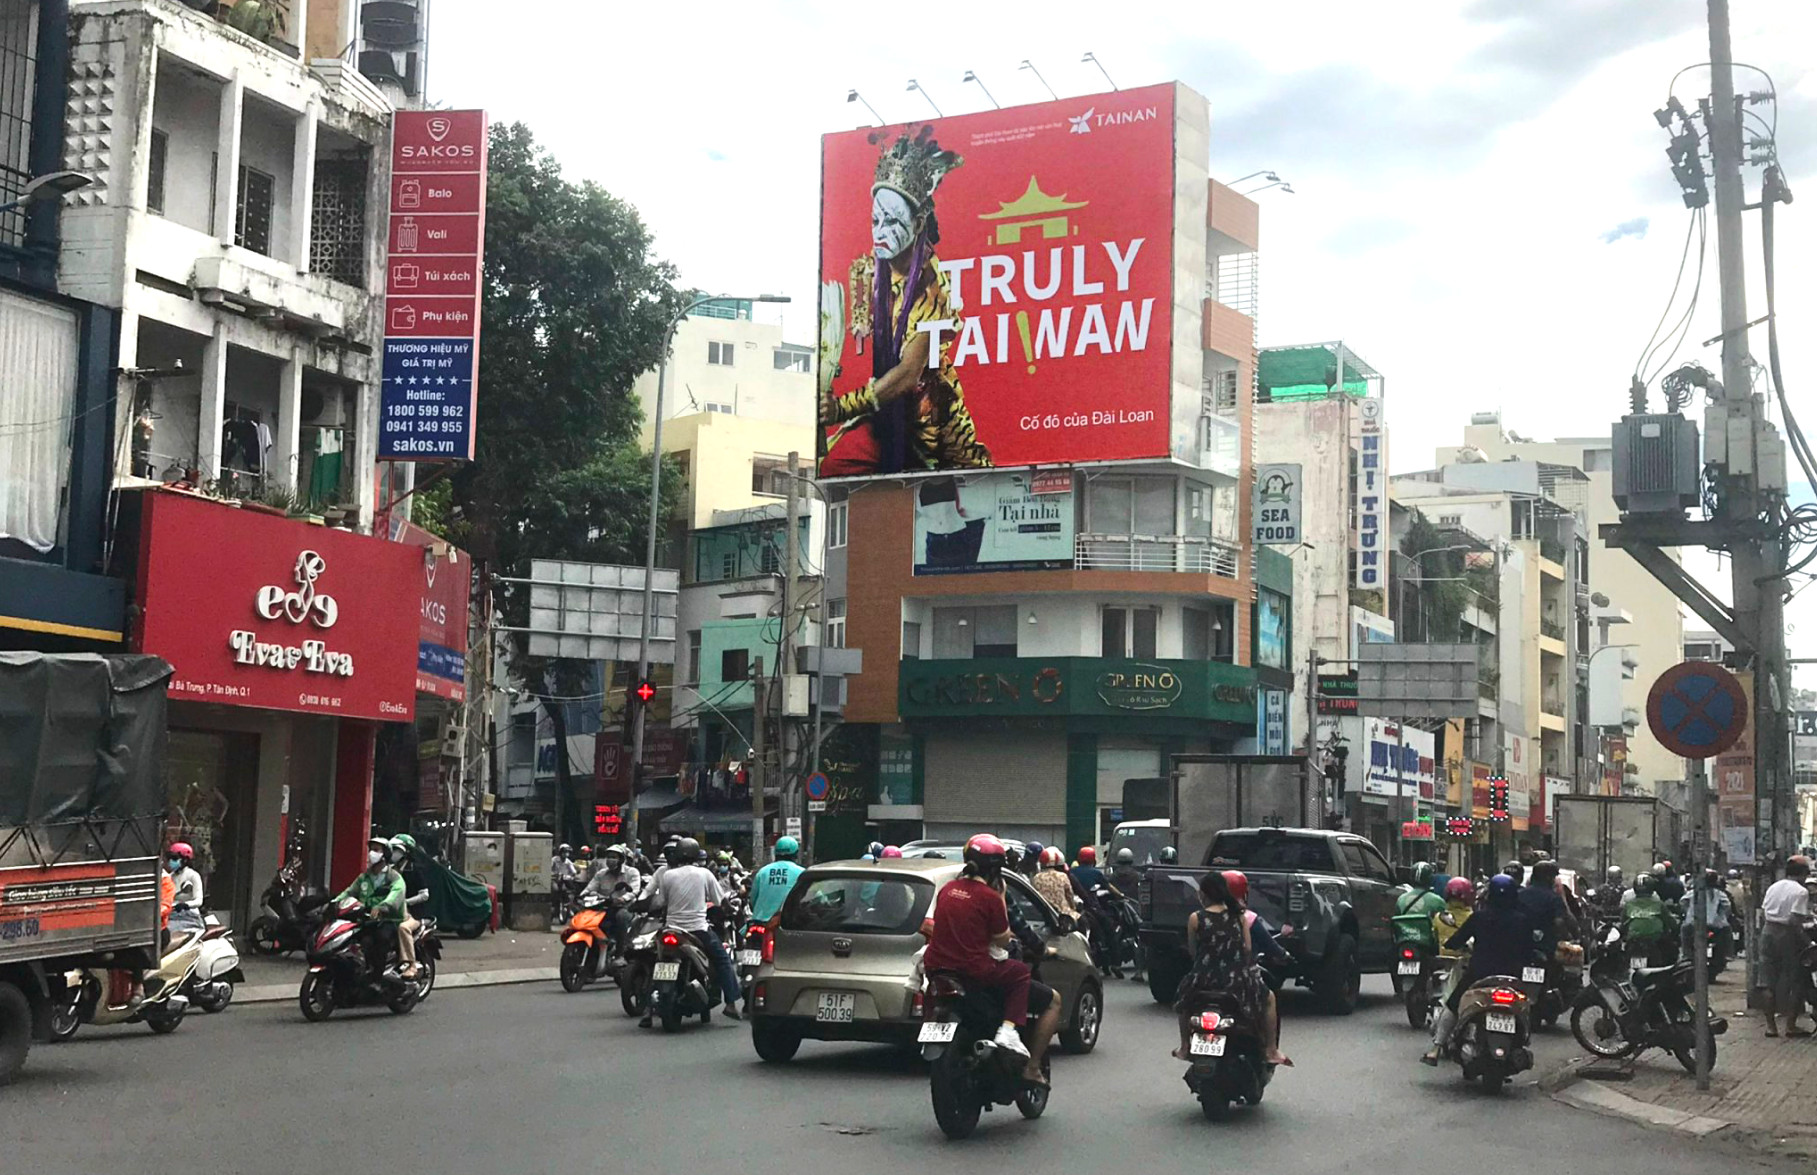 Exposure from Outdoor Advertisement in Vietnam